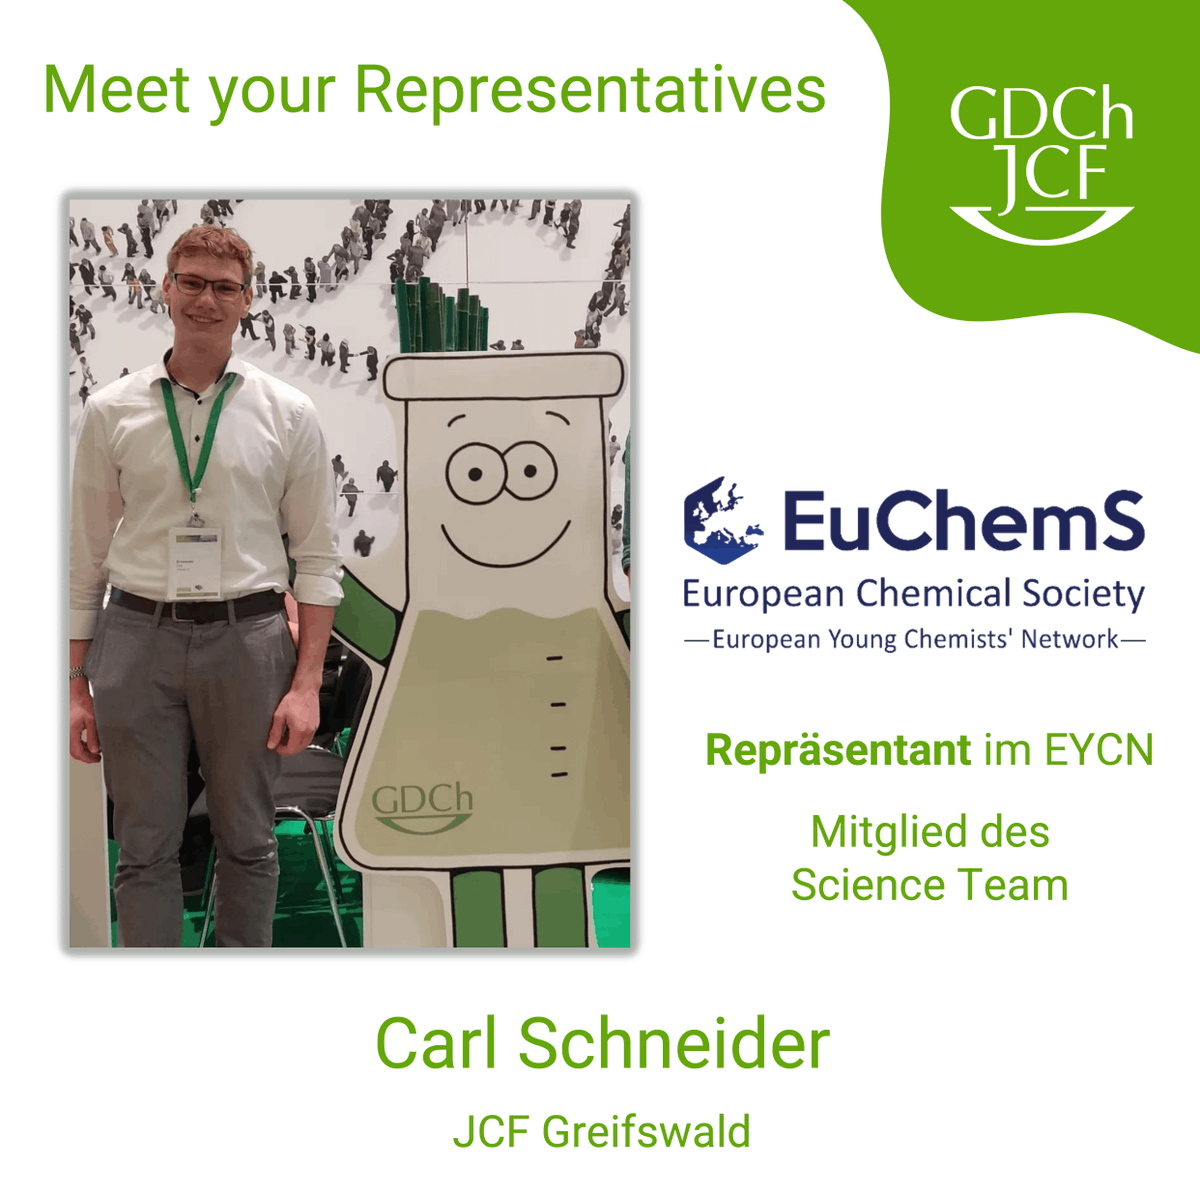 Carl ist JCF Repräsentat im EYCN und Mitglied des Science Teams. Er stärkt den wissenschaftlichen Austausch, unterstützt junge Forschende und ist Regionalvorsitz des JCF Greifswald. Carl forscht an elektroaktiven Biofilmen und beginnt bald sein Masterstudium in Biochemie.